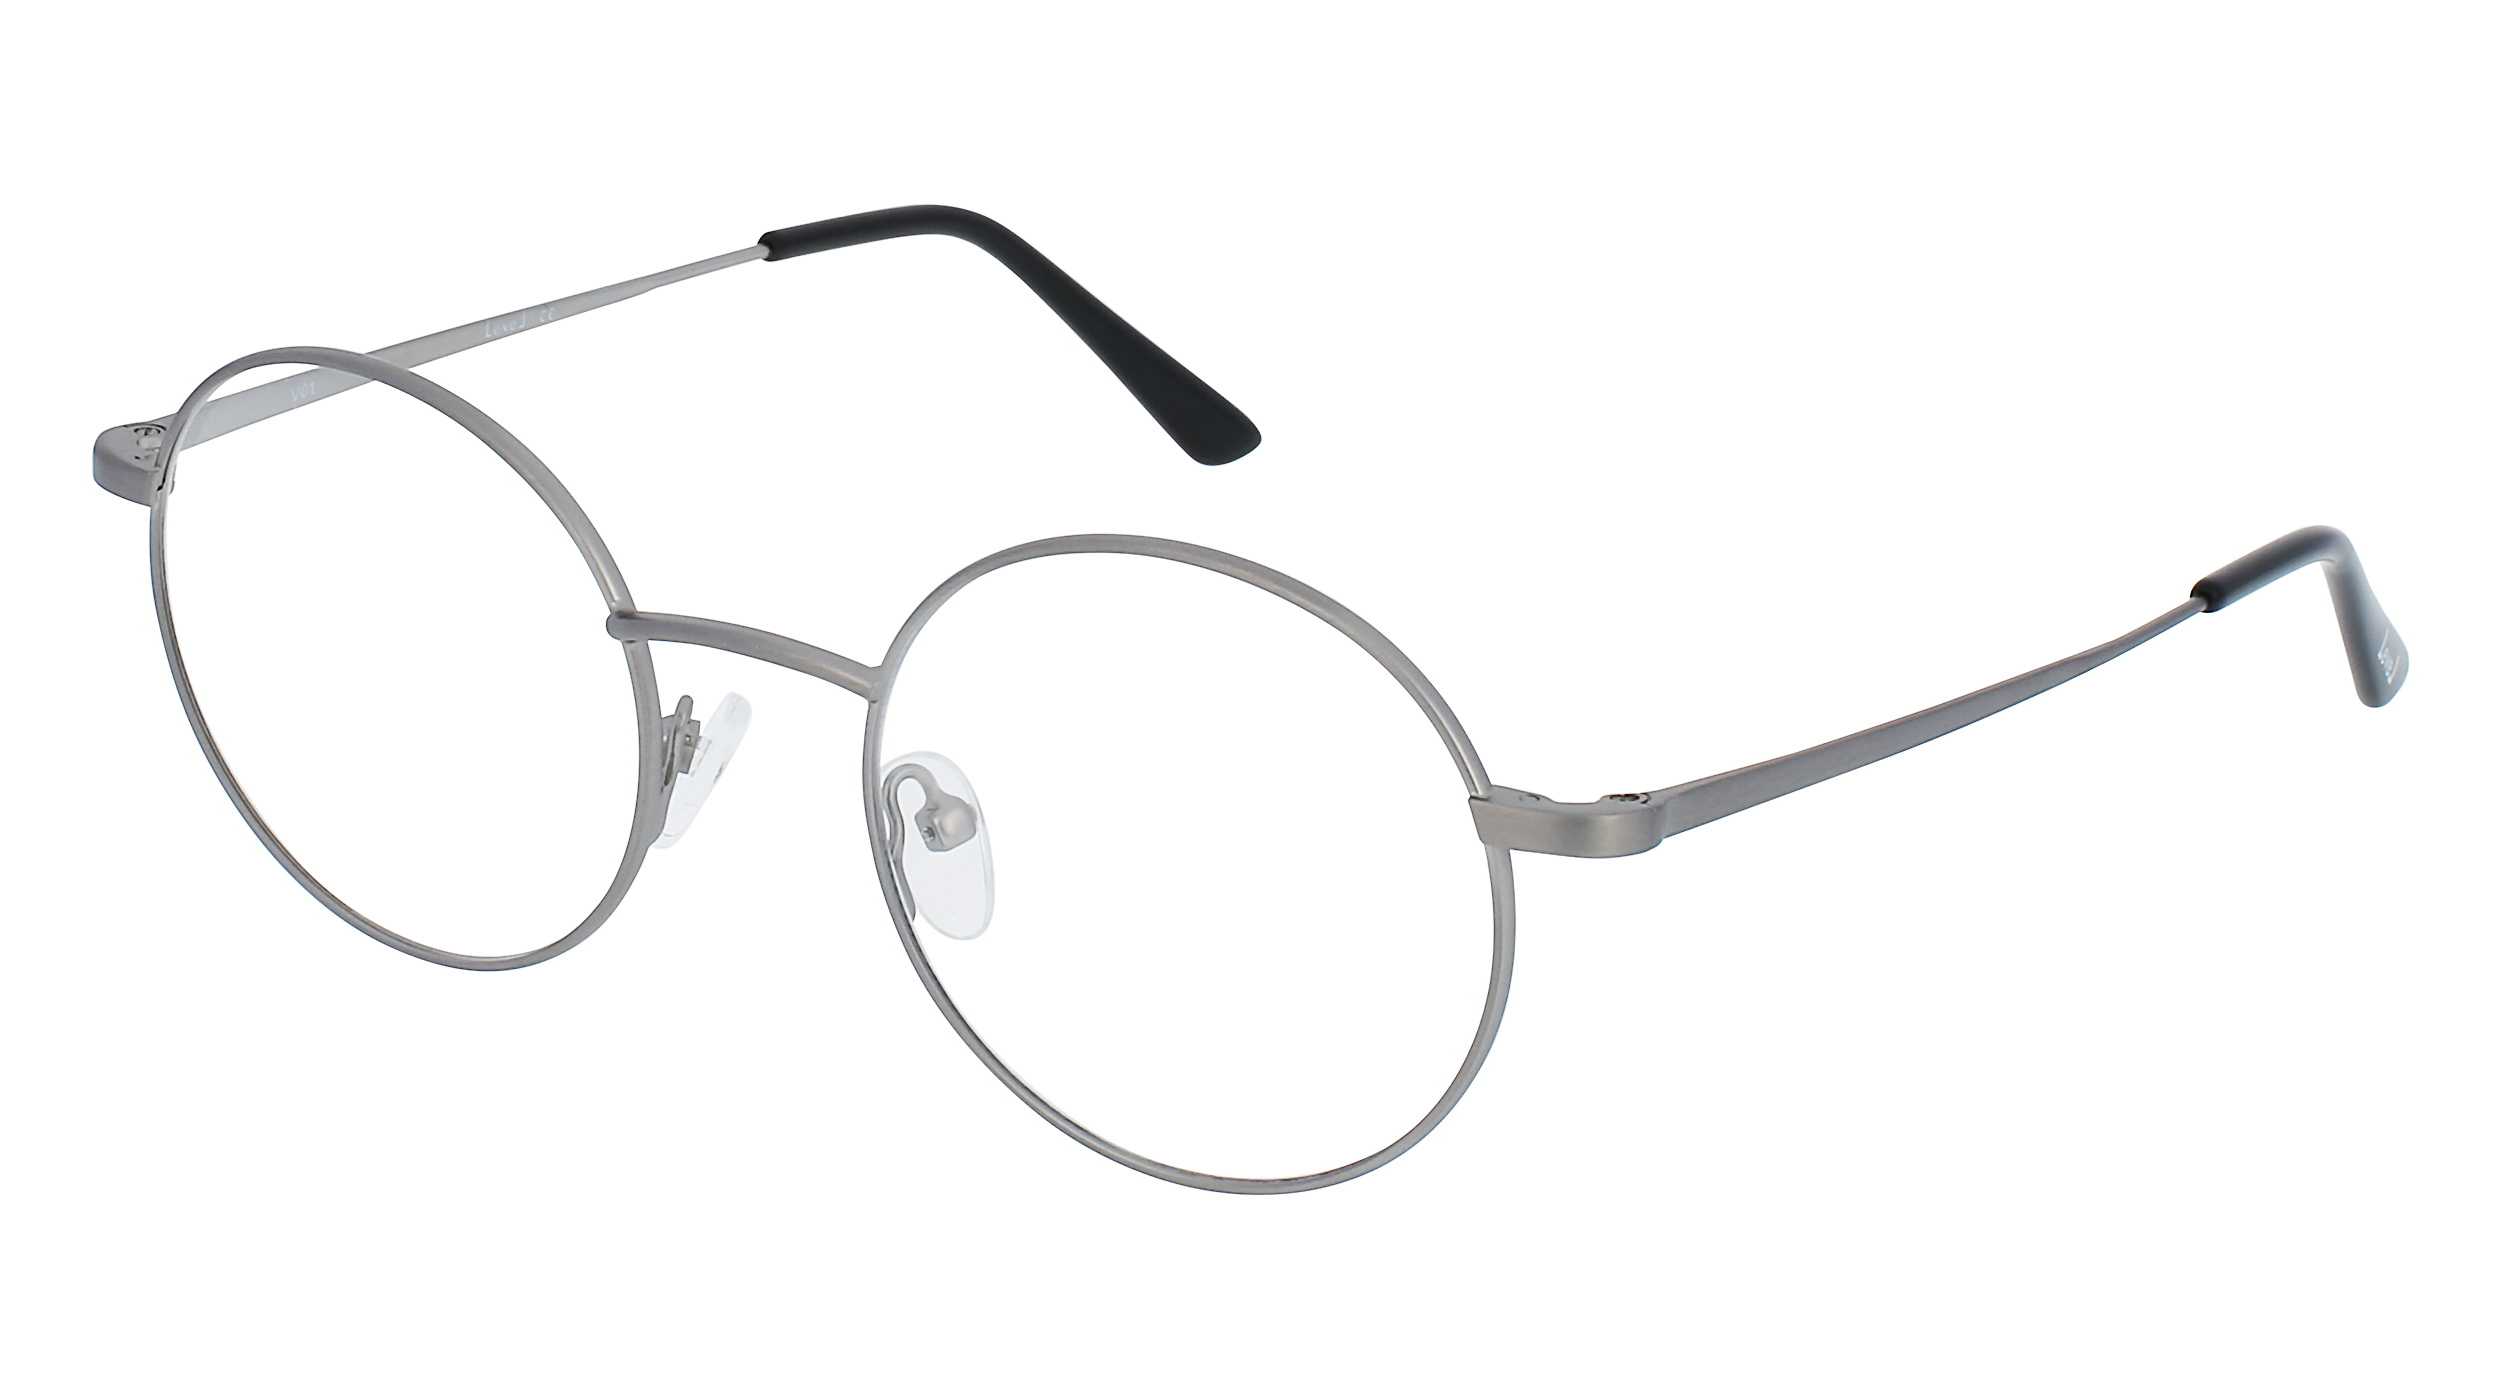 eyeglasses-forfait-le-2331-gun-48-19-unisex-gun-round-full-frame